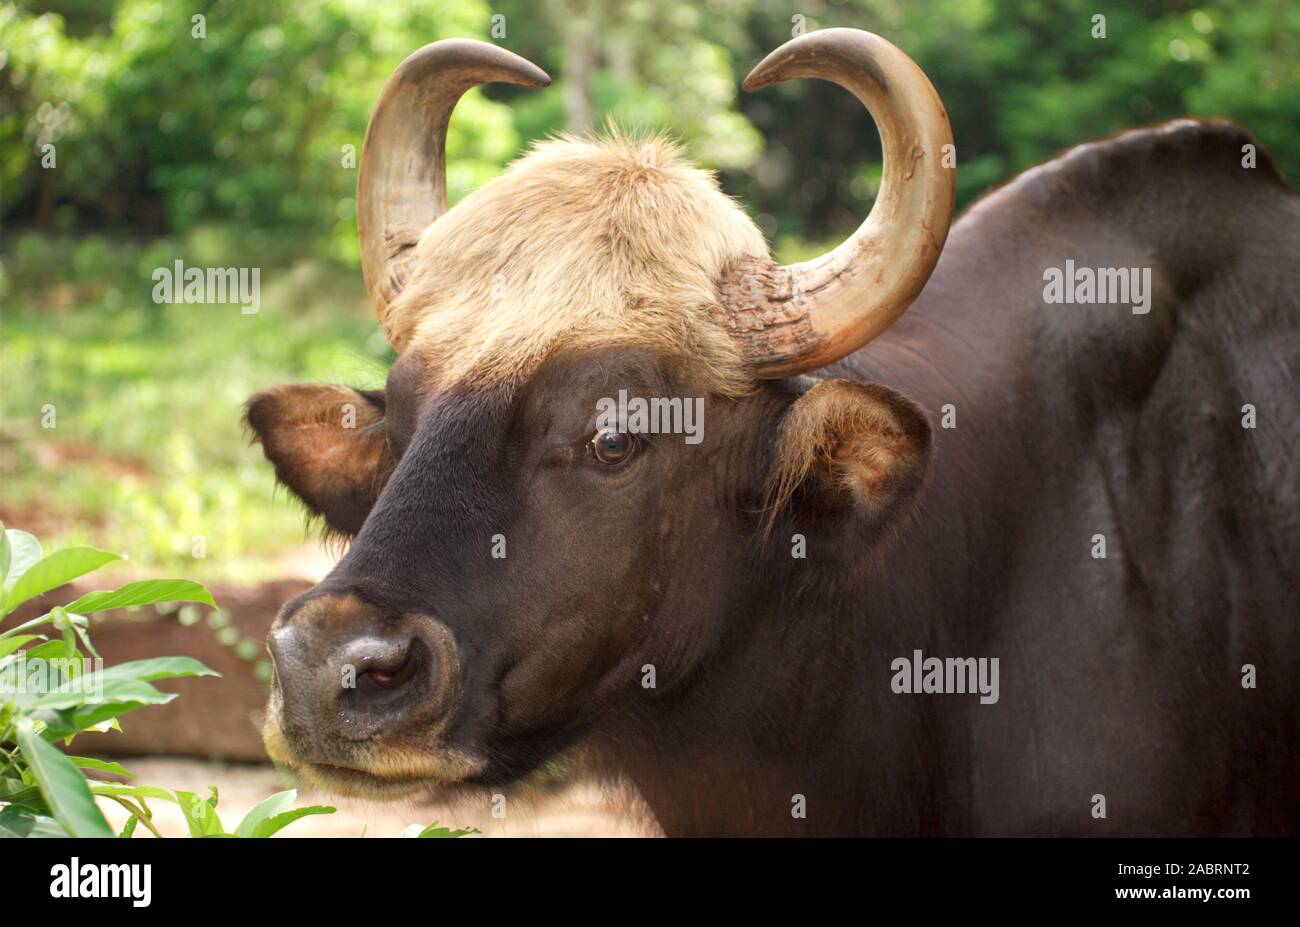 BESTIAME DI GAURO, dettagli testa (Bos gaurus). Specie più grande di bestiame selvatico. Ritratto, testa con corna simmetriche giranti verso l'alto. Ruminante Foto Stock